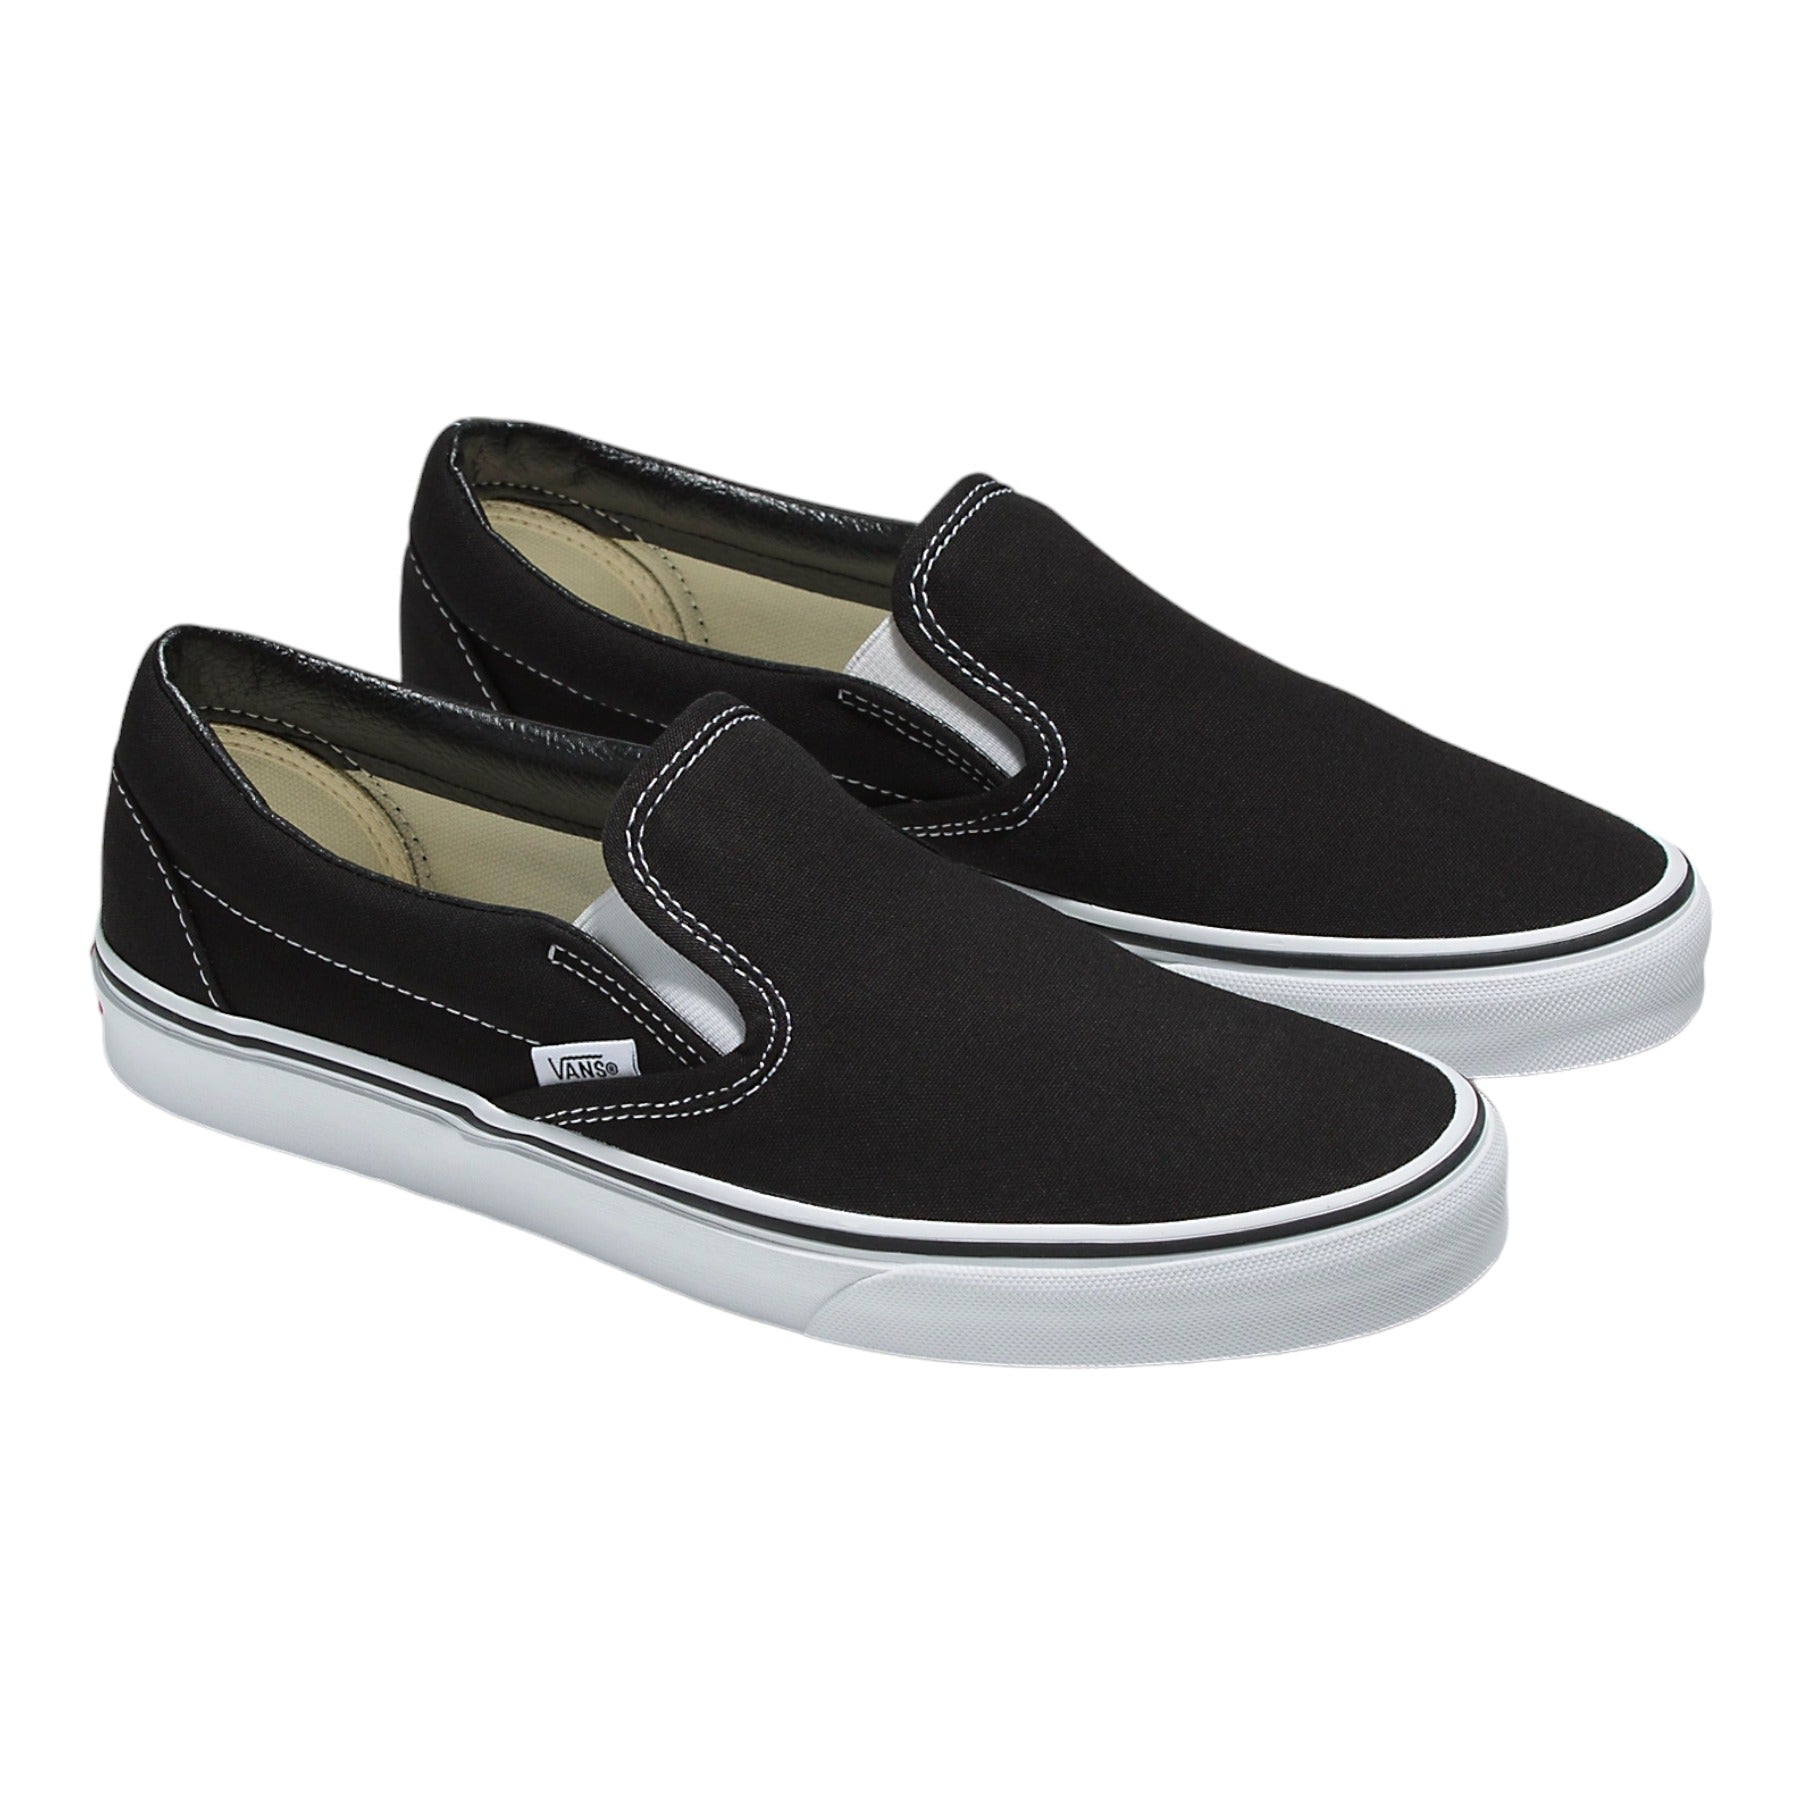 Vans Classic Slip On Shoes - Black/White